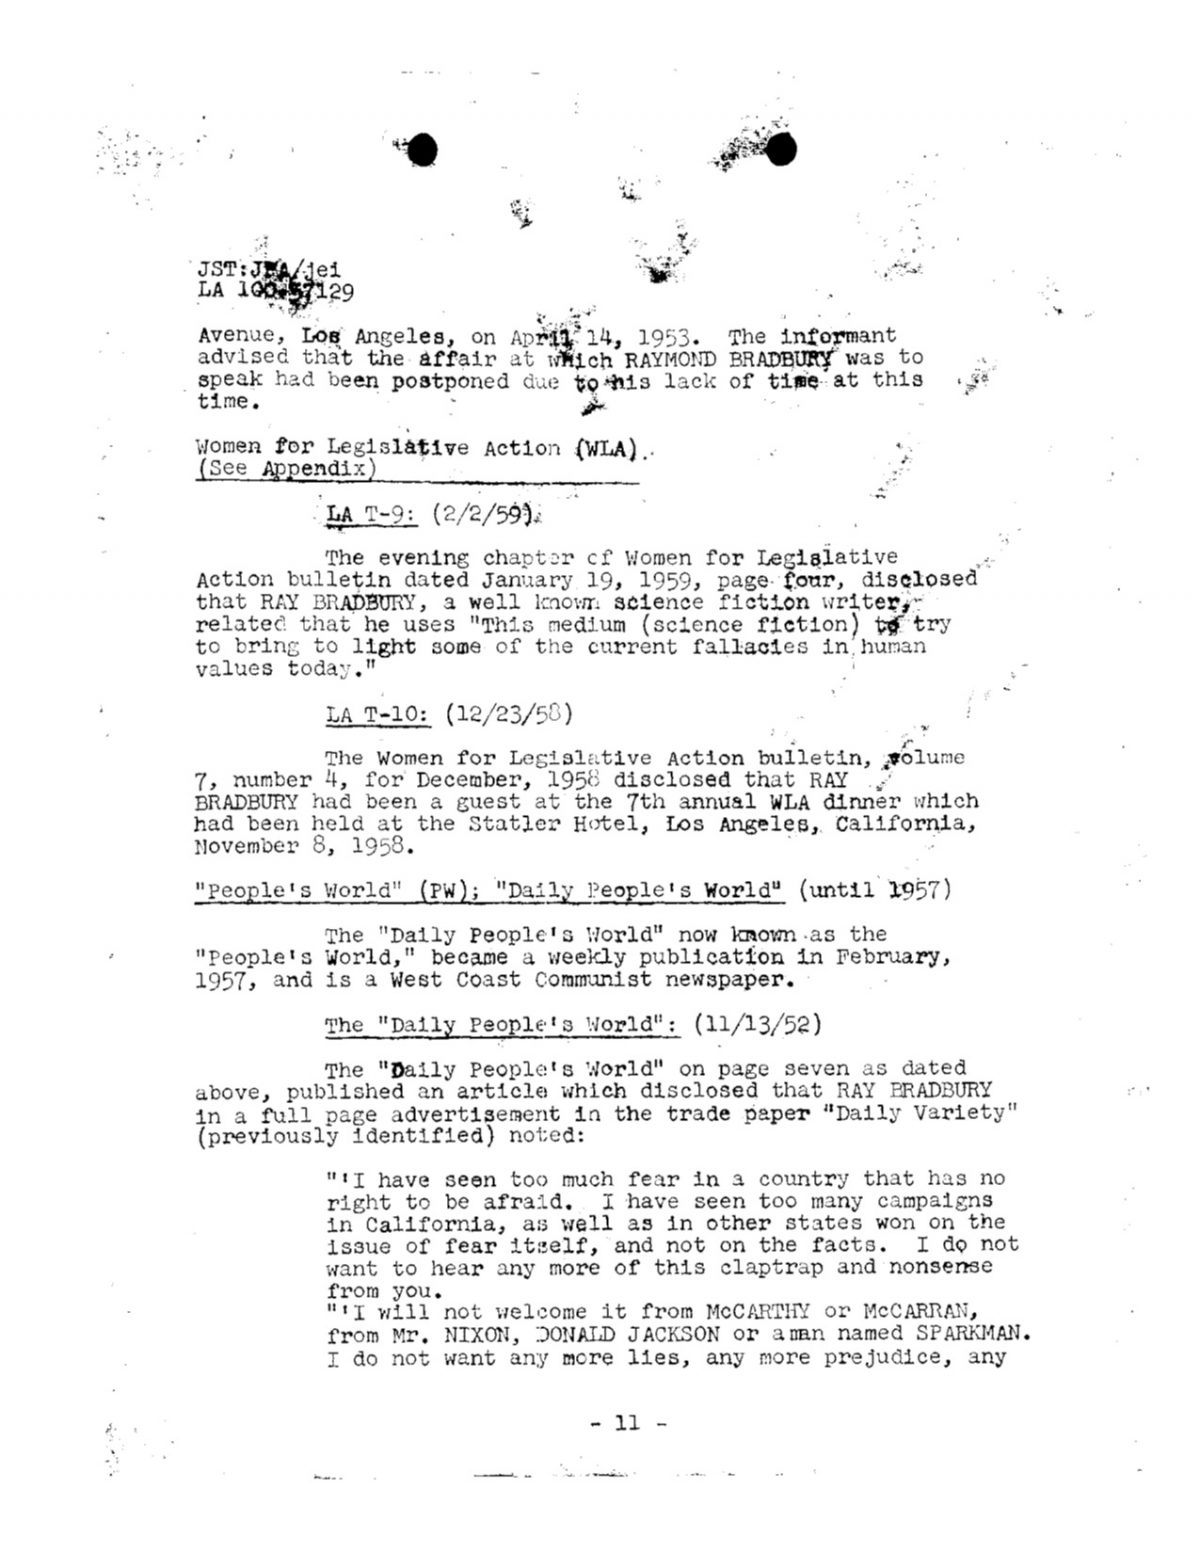 Ray Bradbury FBI files 